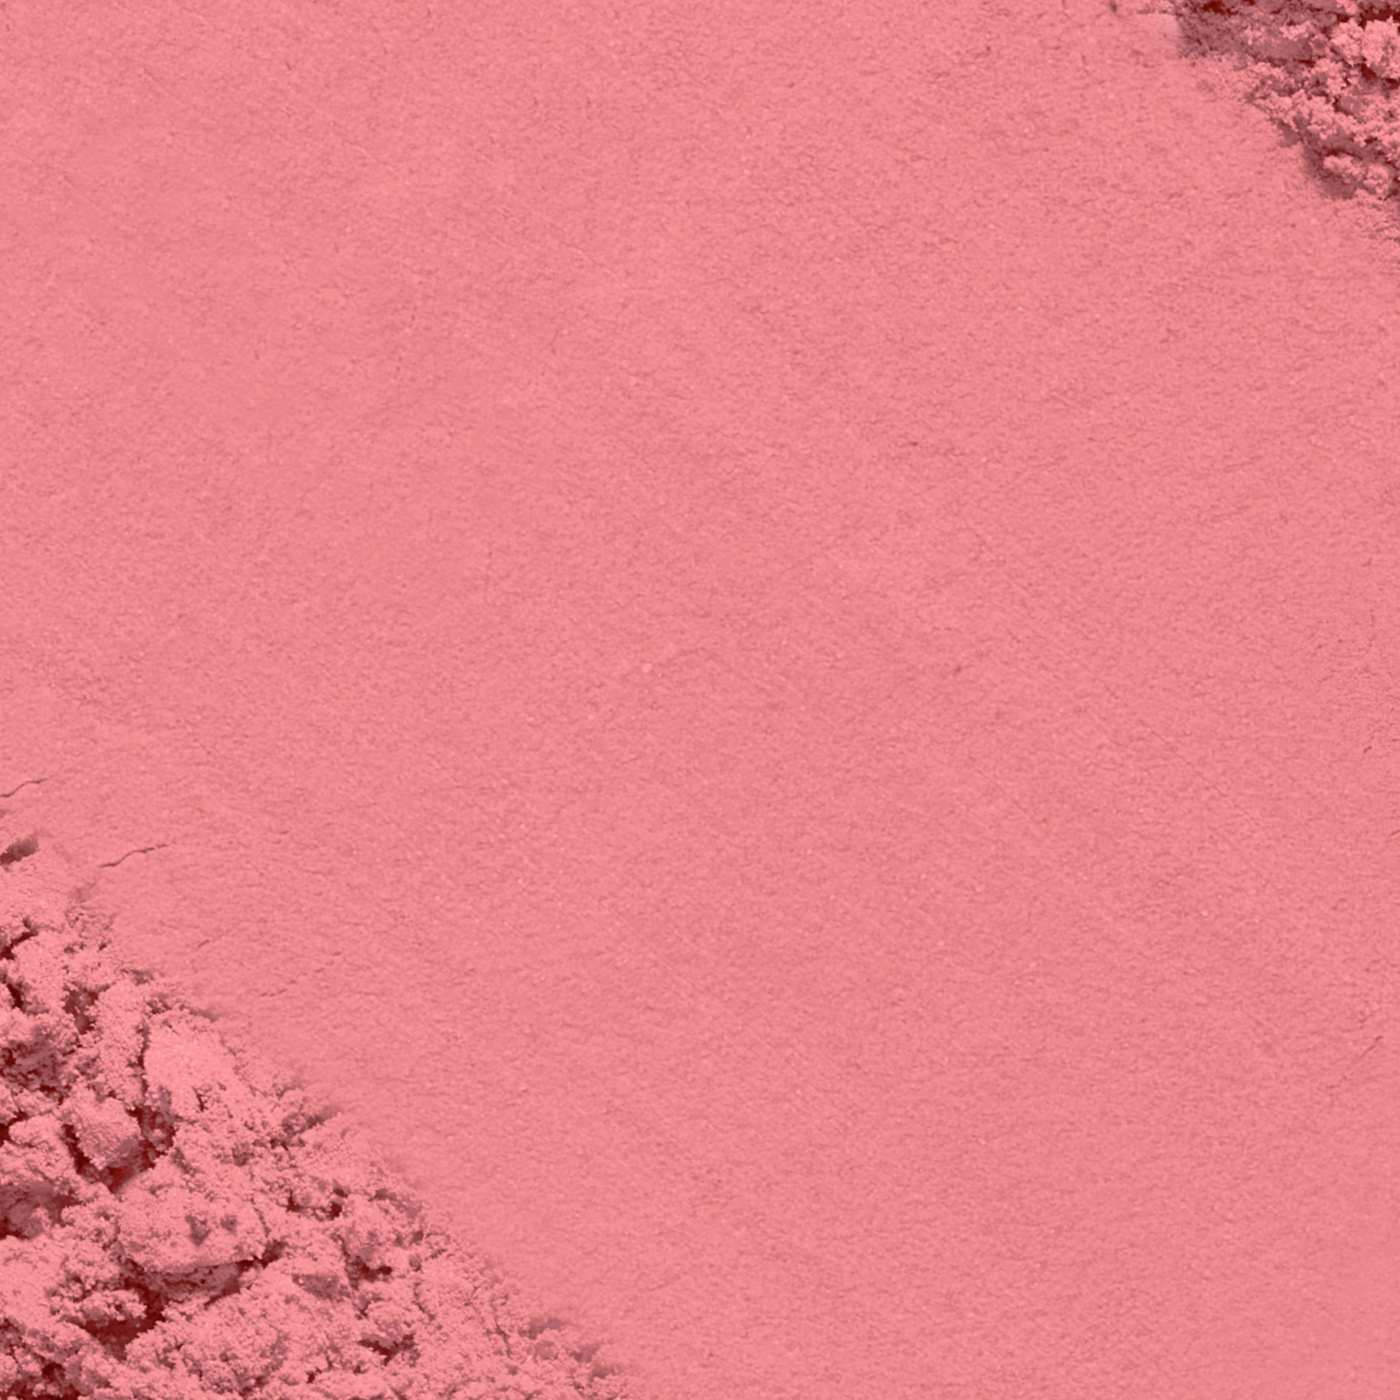 L'Oréal Paris True Match Super-Blendable Blush, Soft Powder Texture Rosy Outlook; image 3 of 5